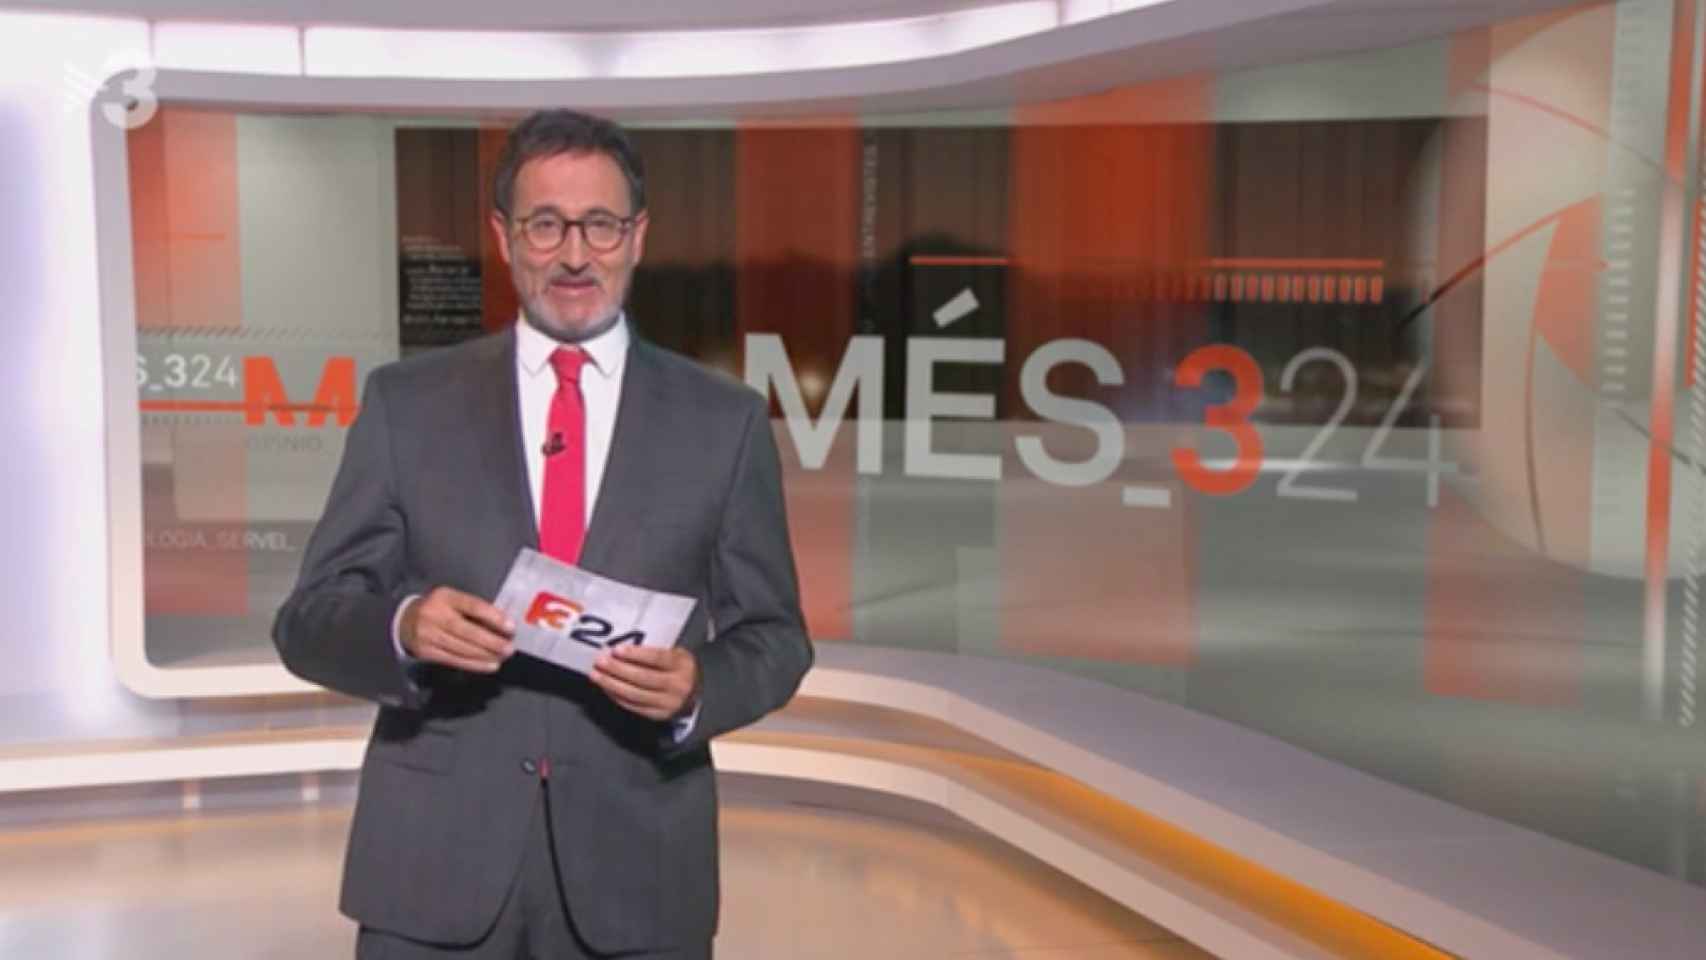 El programa 'Més324' está presentado por Xavier Graset